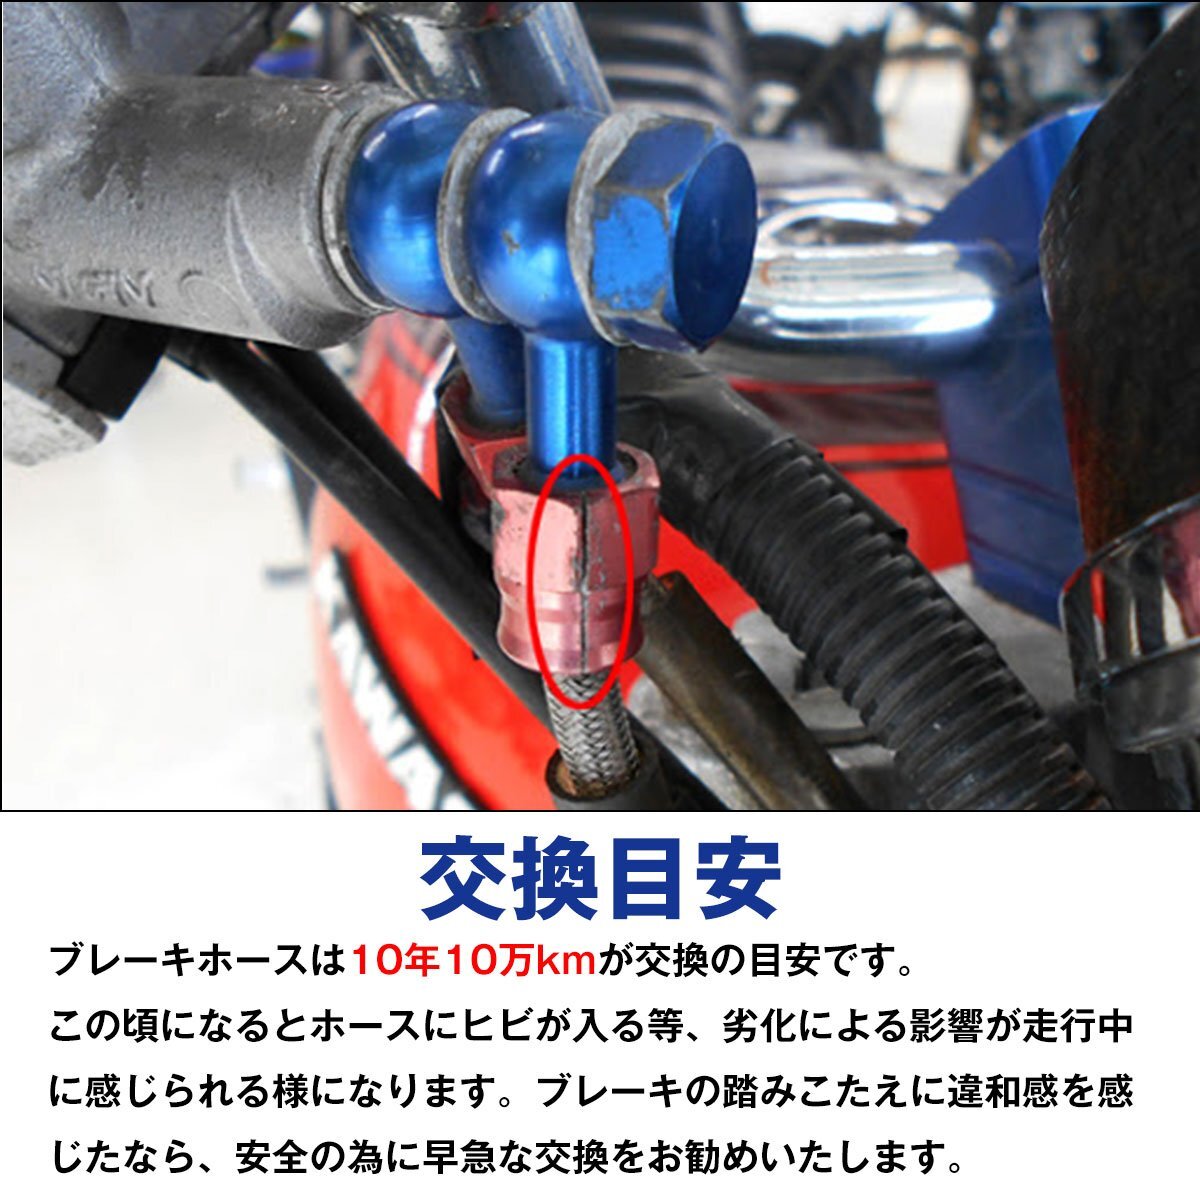 [ new goods immediate payment ] Honda VTR1000F oil pressure stain mesh hose angle strut &20° rear rear for rear brake hose 1 pcs black B